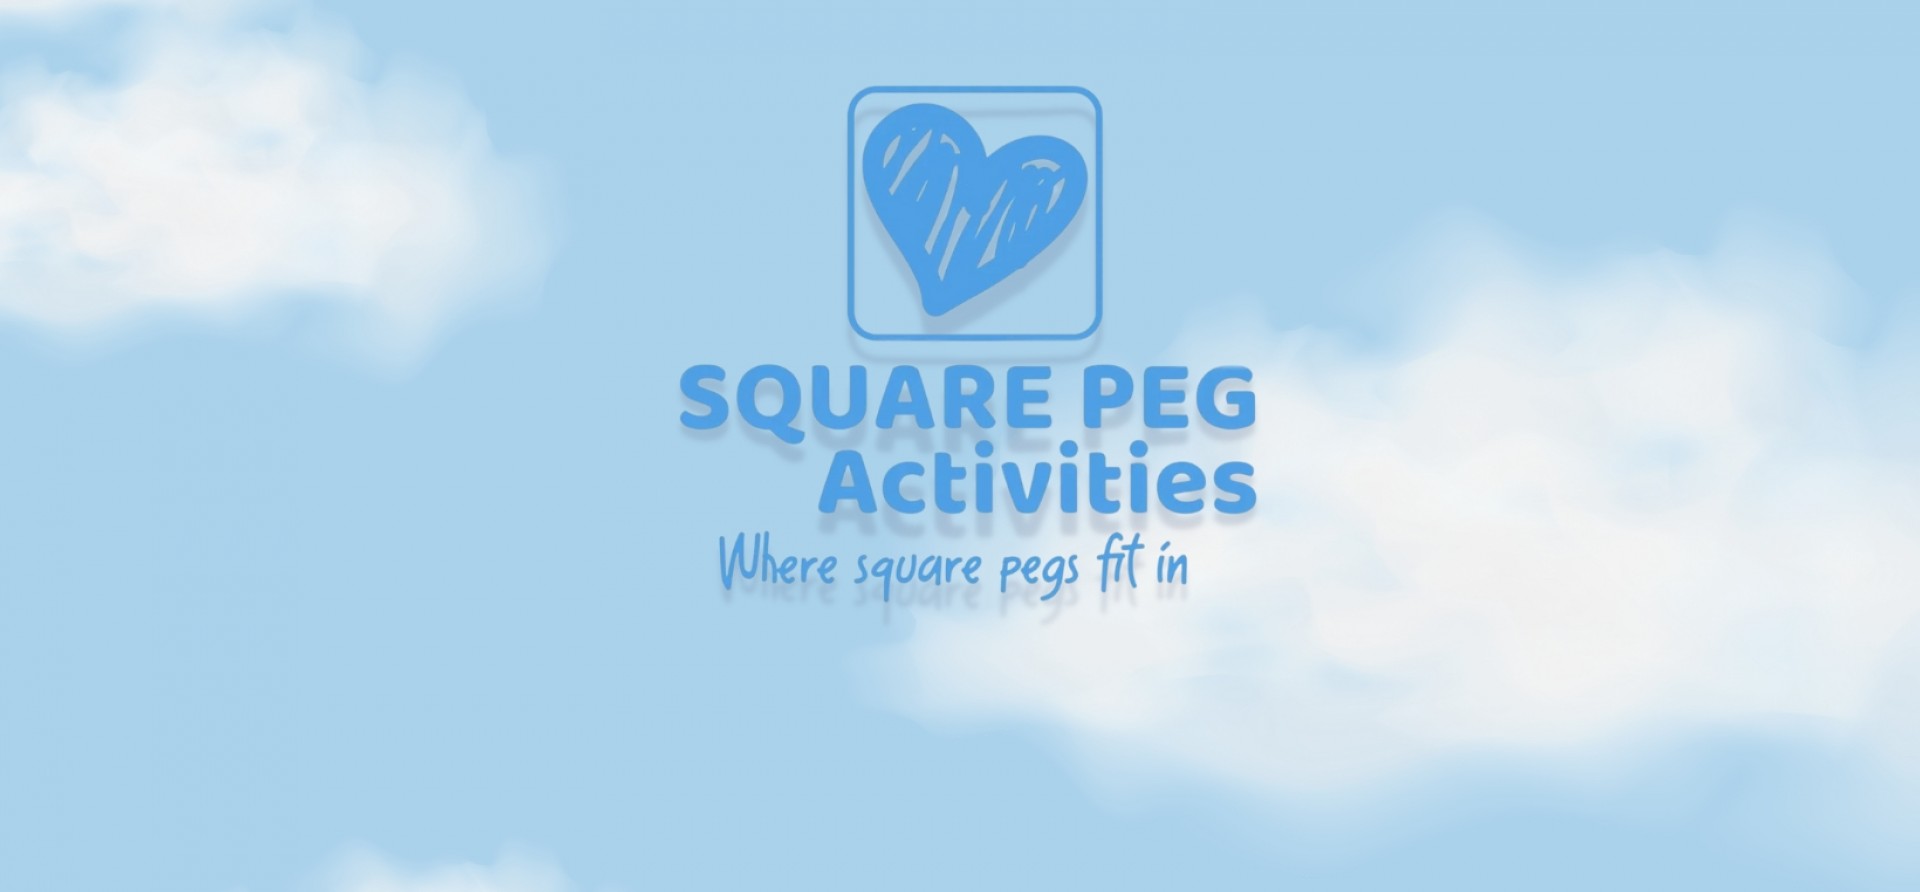 Square Peg blog cover 1